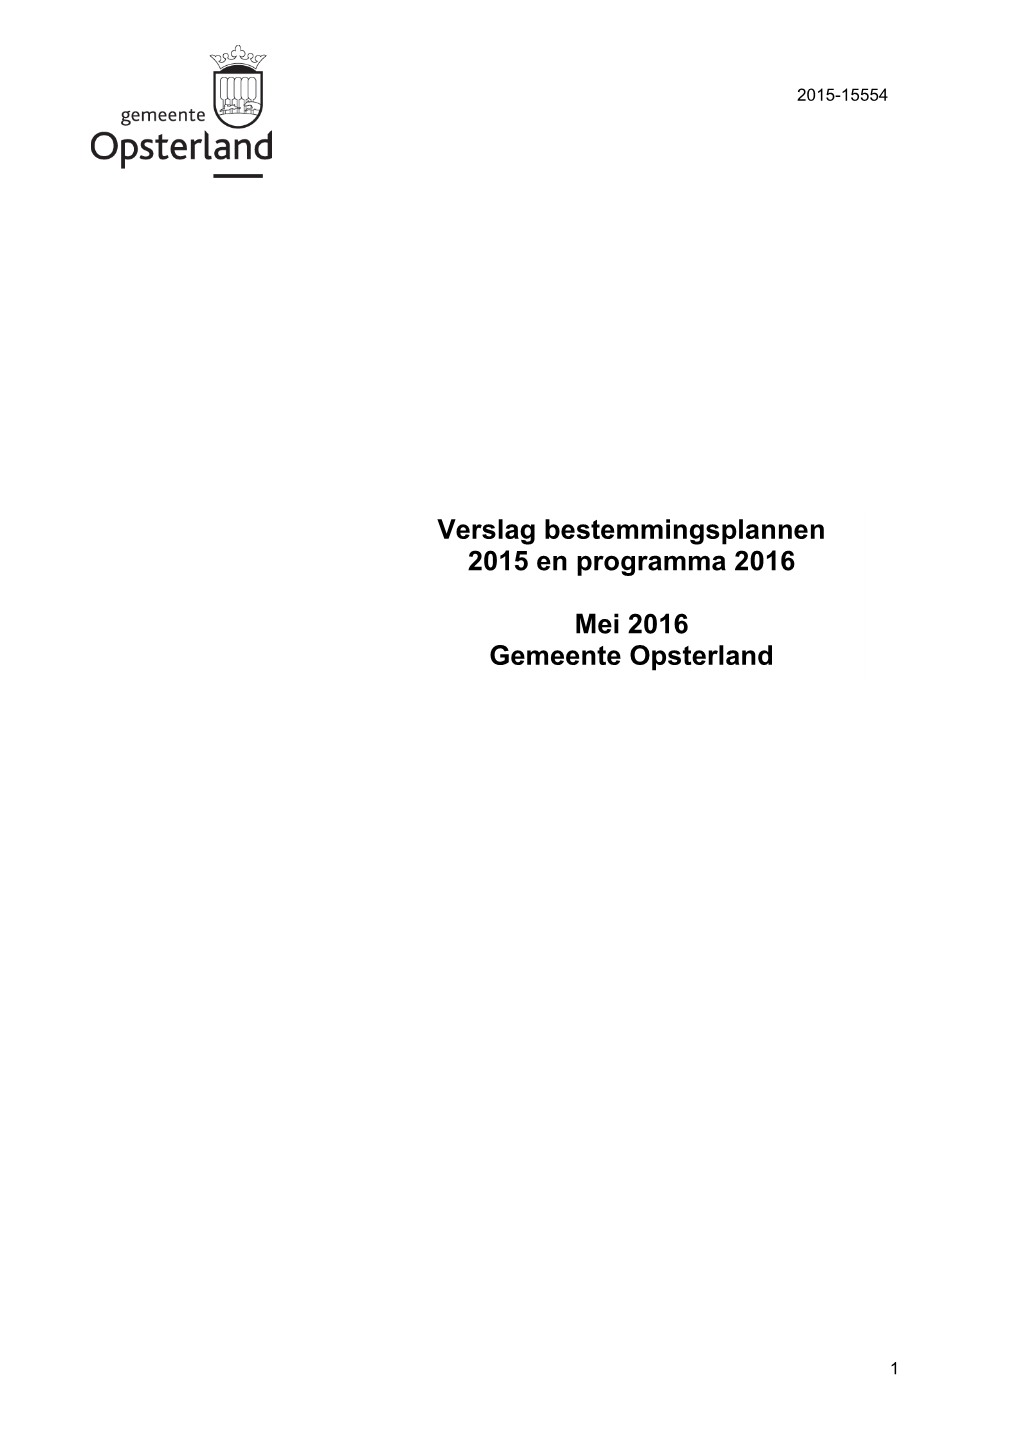 Verslag Bestemmingsplannen 2015 En Programma 2016 Mei 2016 Gemeente Opsterland